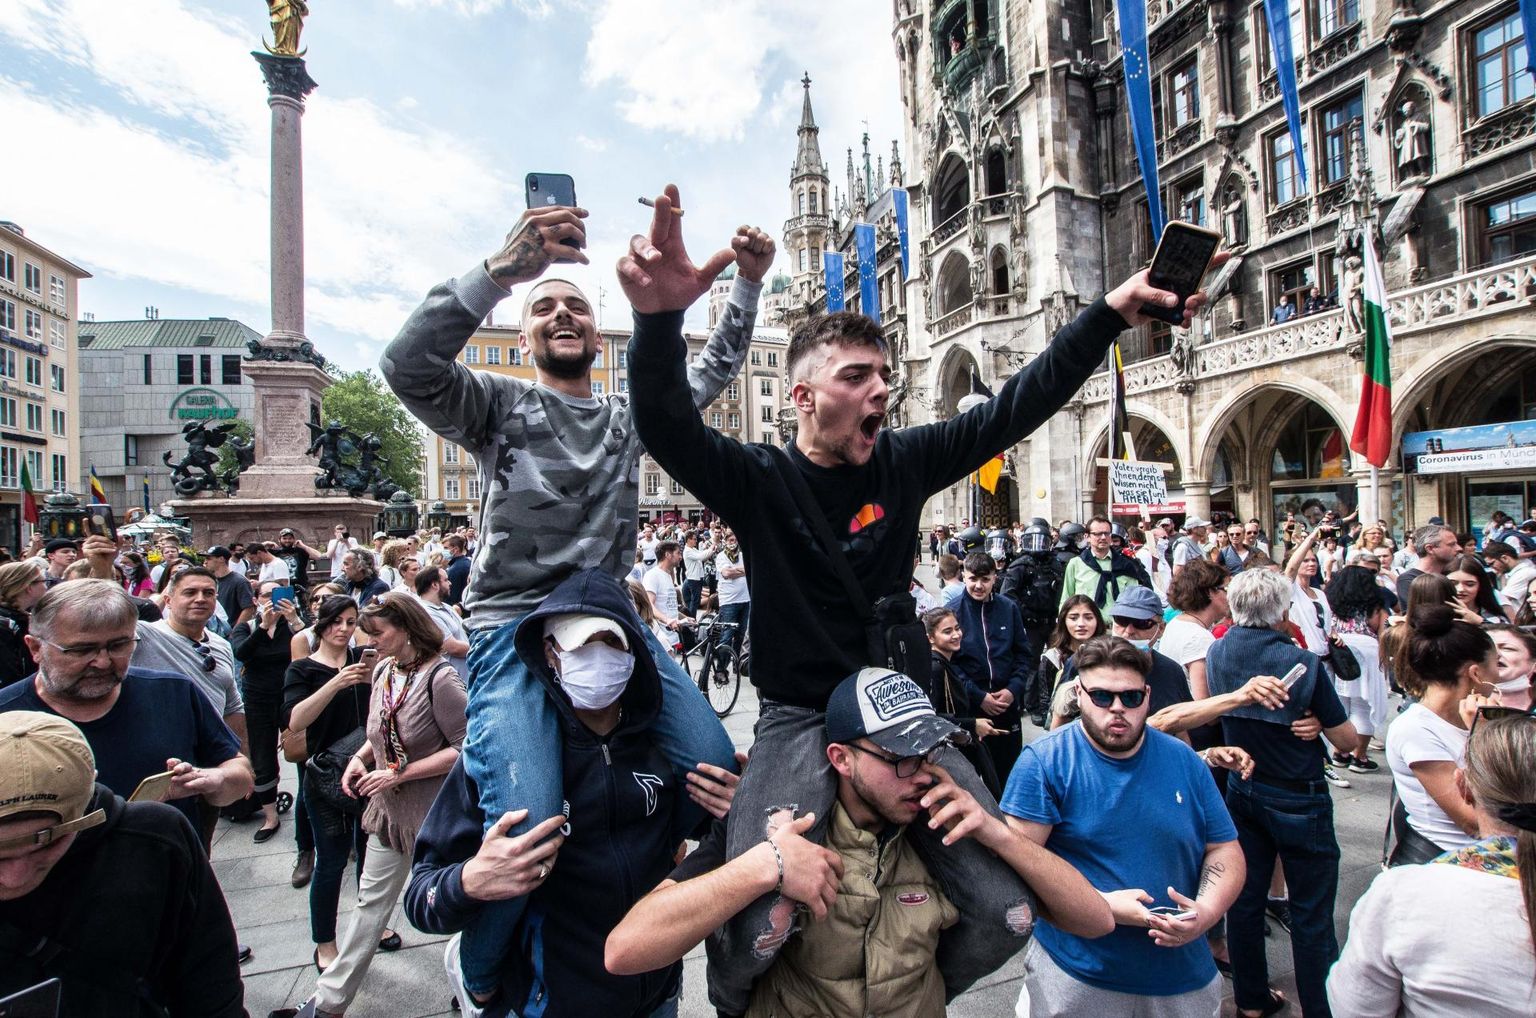 Möödunud reedel Münchenis toimunud koroonapiirangutevastasel protestil osales ligi 3000 inimest, nende seas vandenõuteoreetikuid, paremradikaalseid poliitikuid, paremäärmuslasi ja jalgpallihuligaane. 